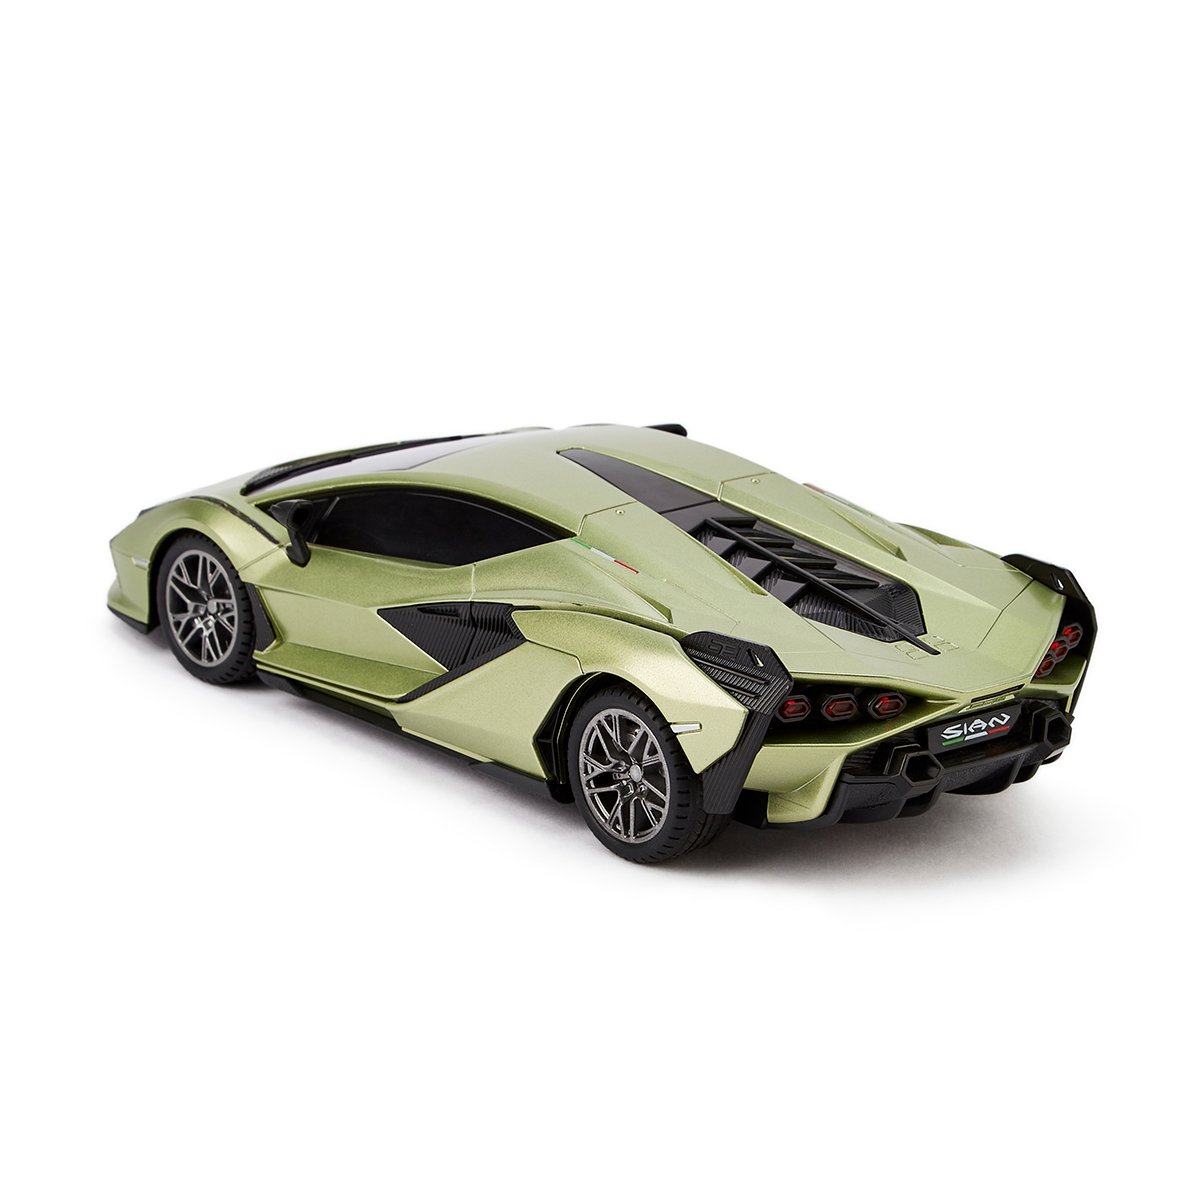 Автомобиль KS Drive на р/у Lamborghini Sian 1:24, 2.4Ghz зеленый (124GLSG) - фото 5